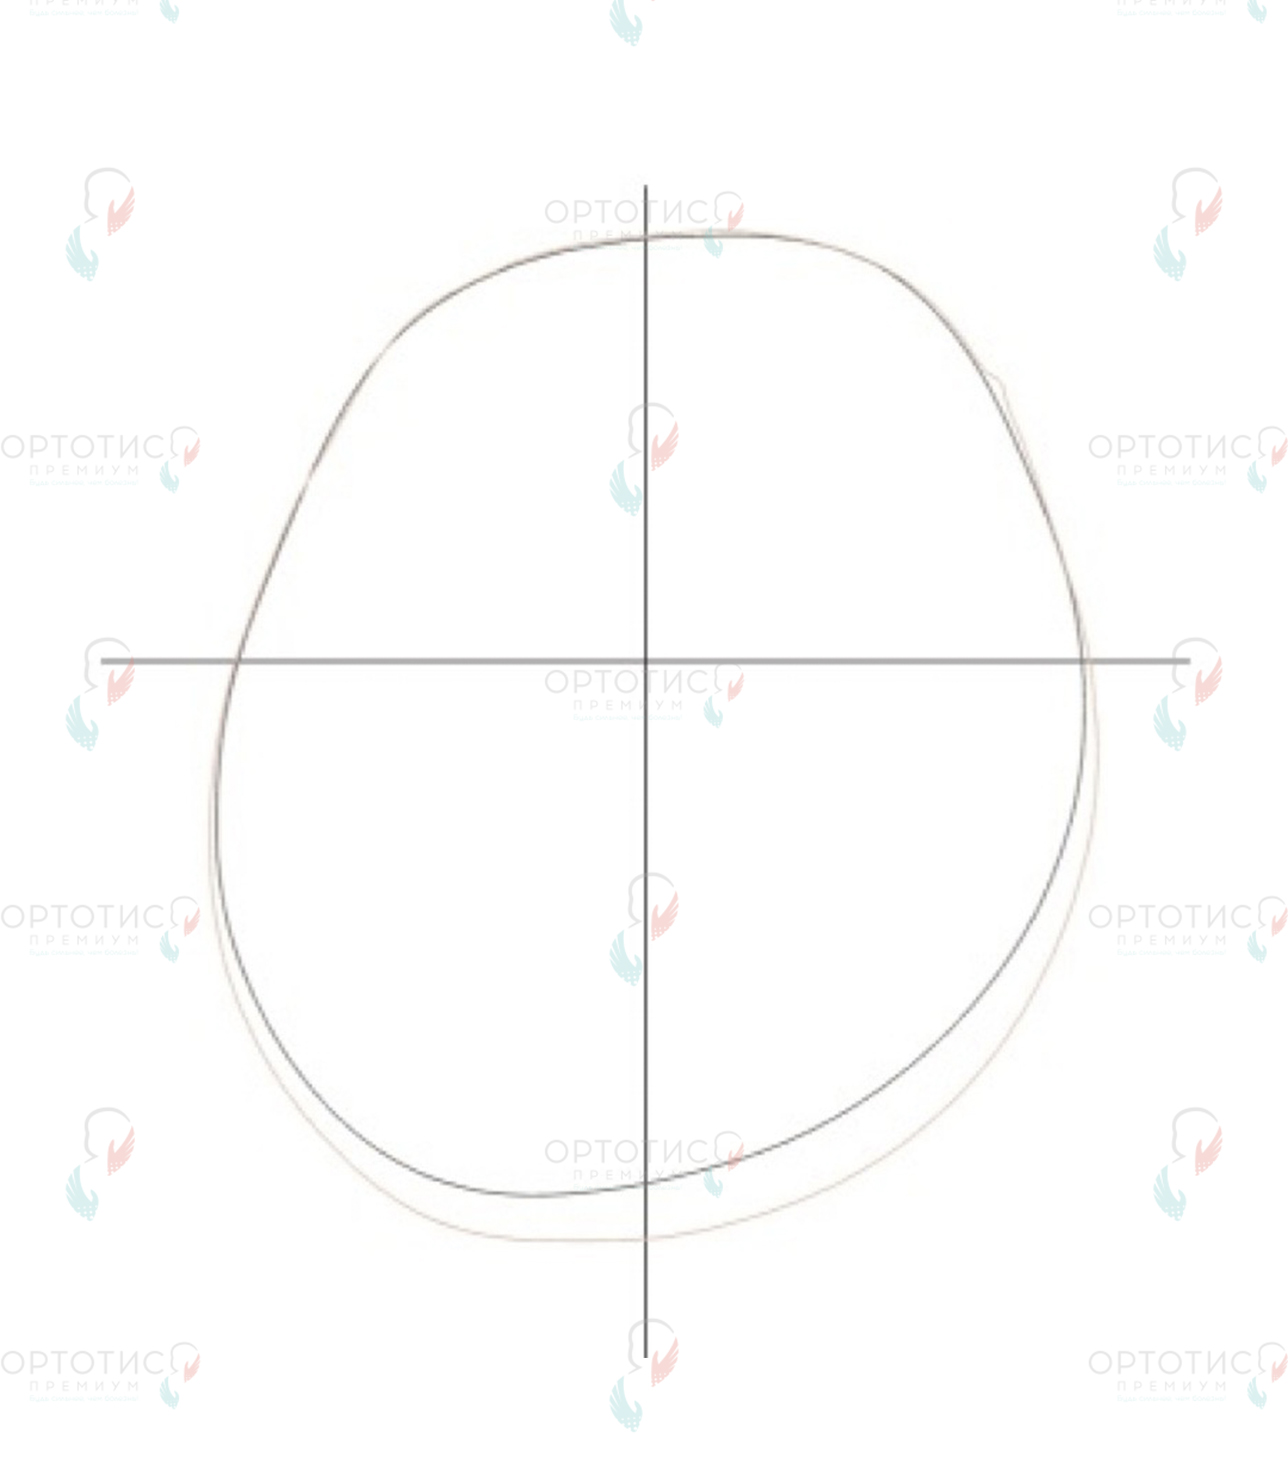 Позиционная асимметричная брахицефалия, 1,5 месяца - Ортотис Премиум